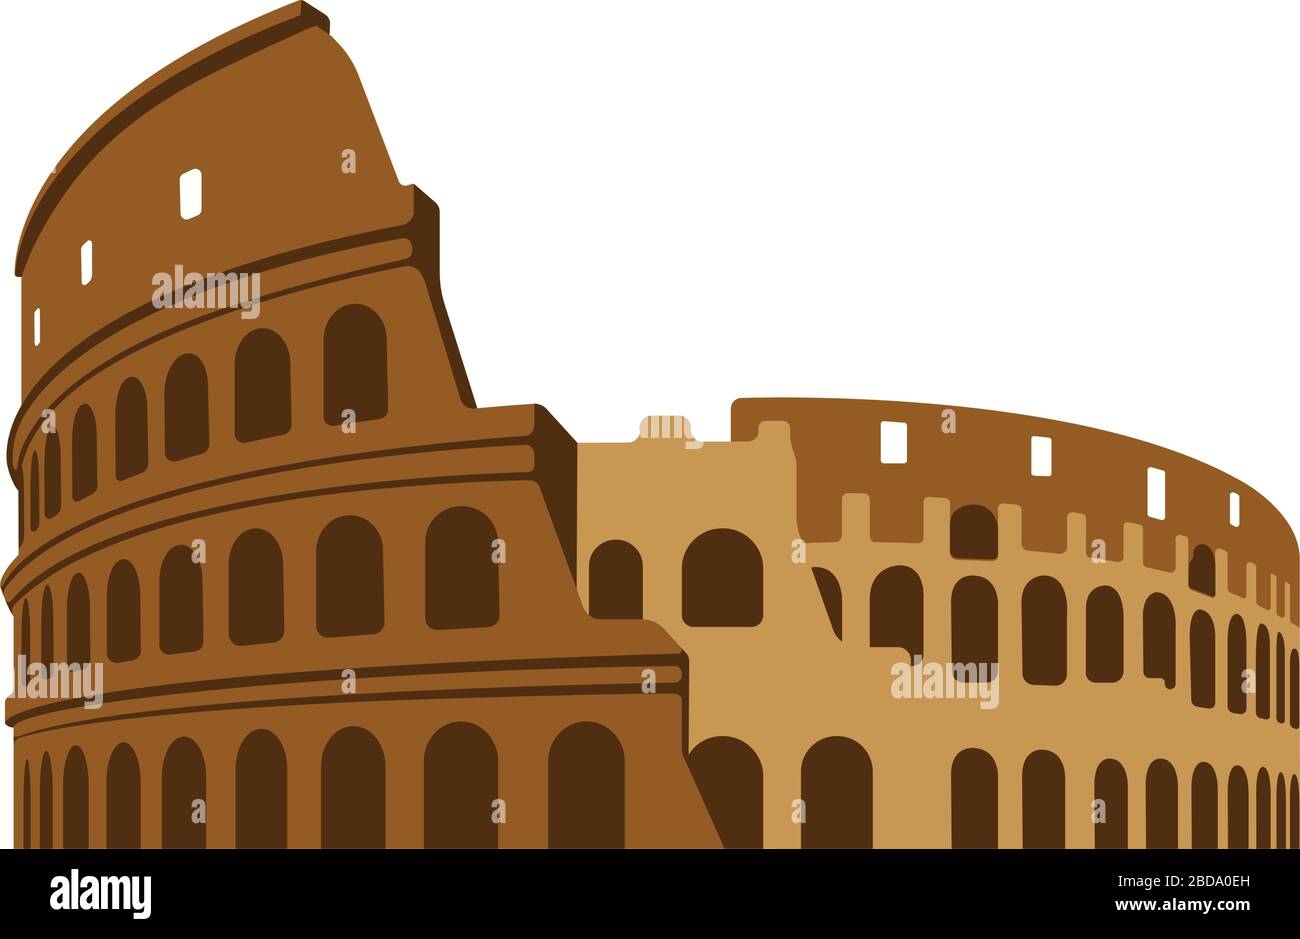 Kolosseum - Italien, Rom / weltberühmte Bauwerke Vektorgrafiken. Stock Vektor